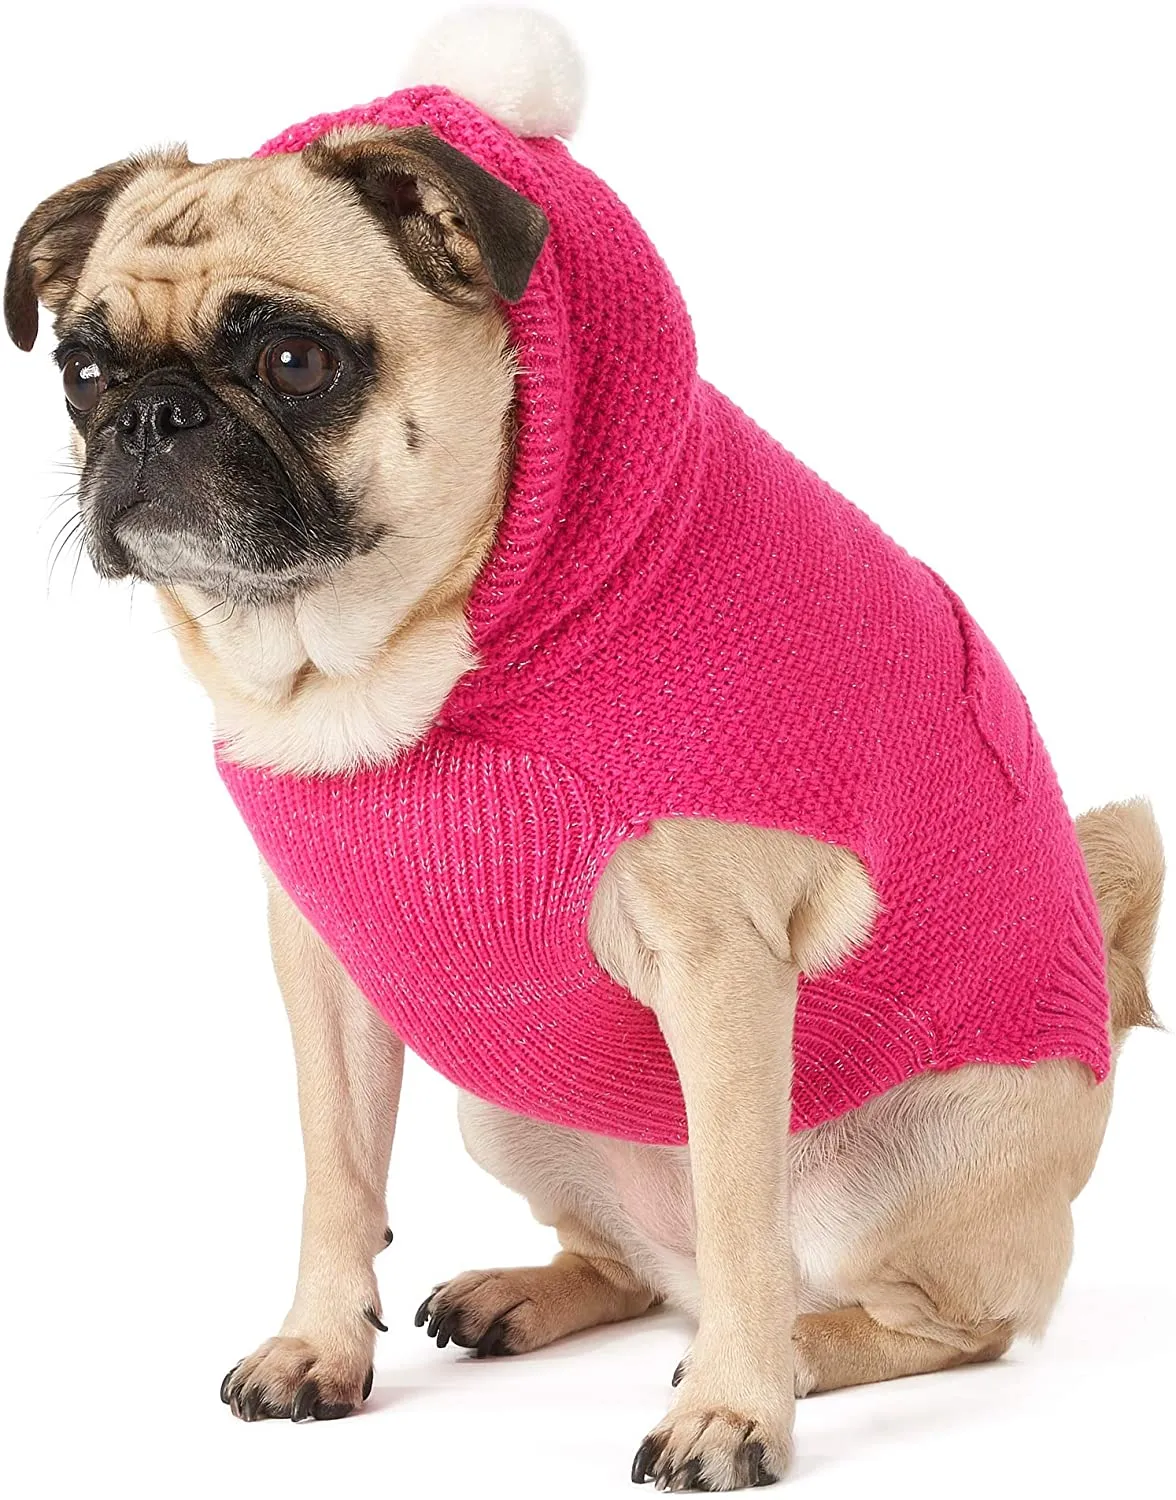 모피 공, 작은 개 강아지 의류 고양이 의상에 대 한 따뜻한 겨울 코트 아웃 도어 재킷과 니트 개 스웨터 까마귀 (핑크)